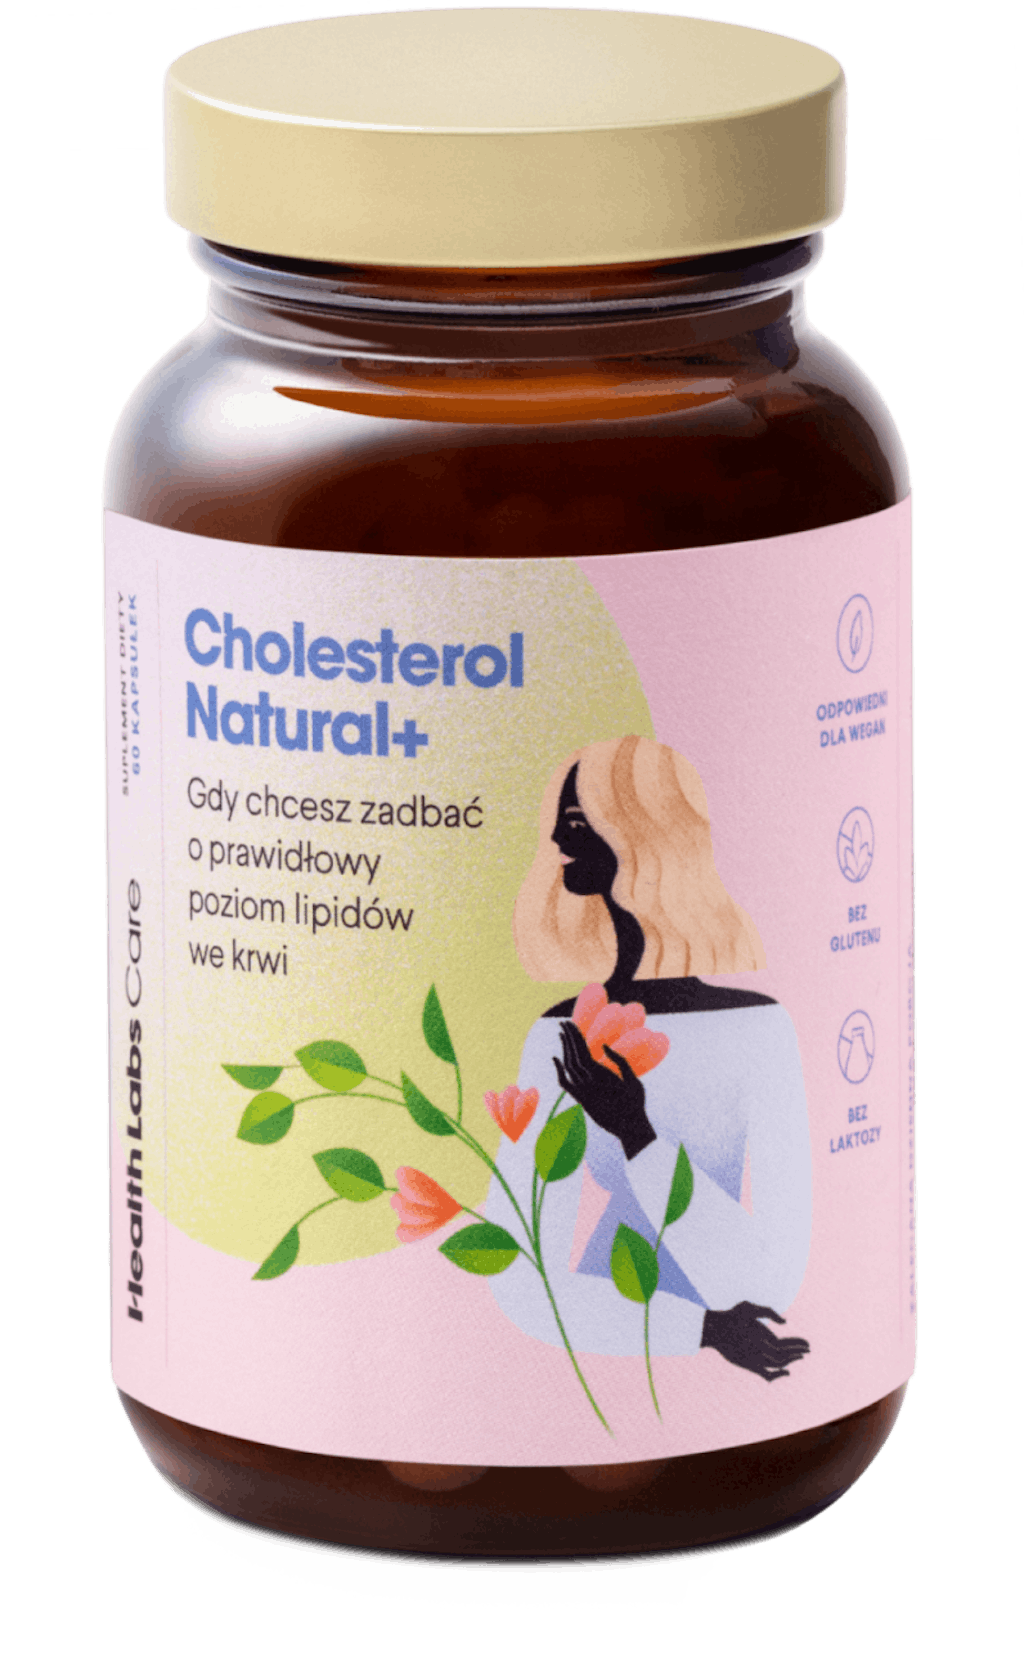 Cholesterol Natural+